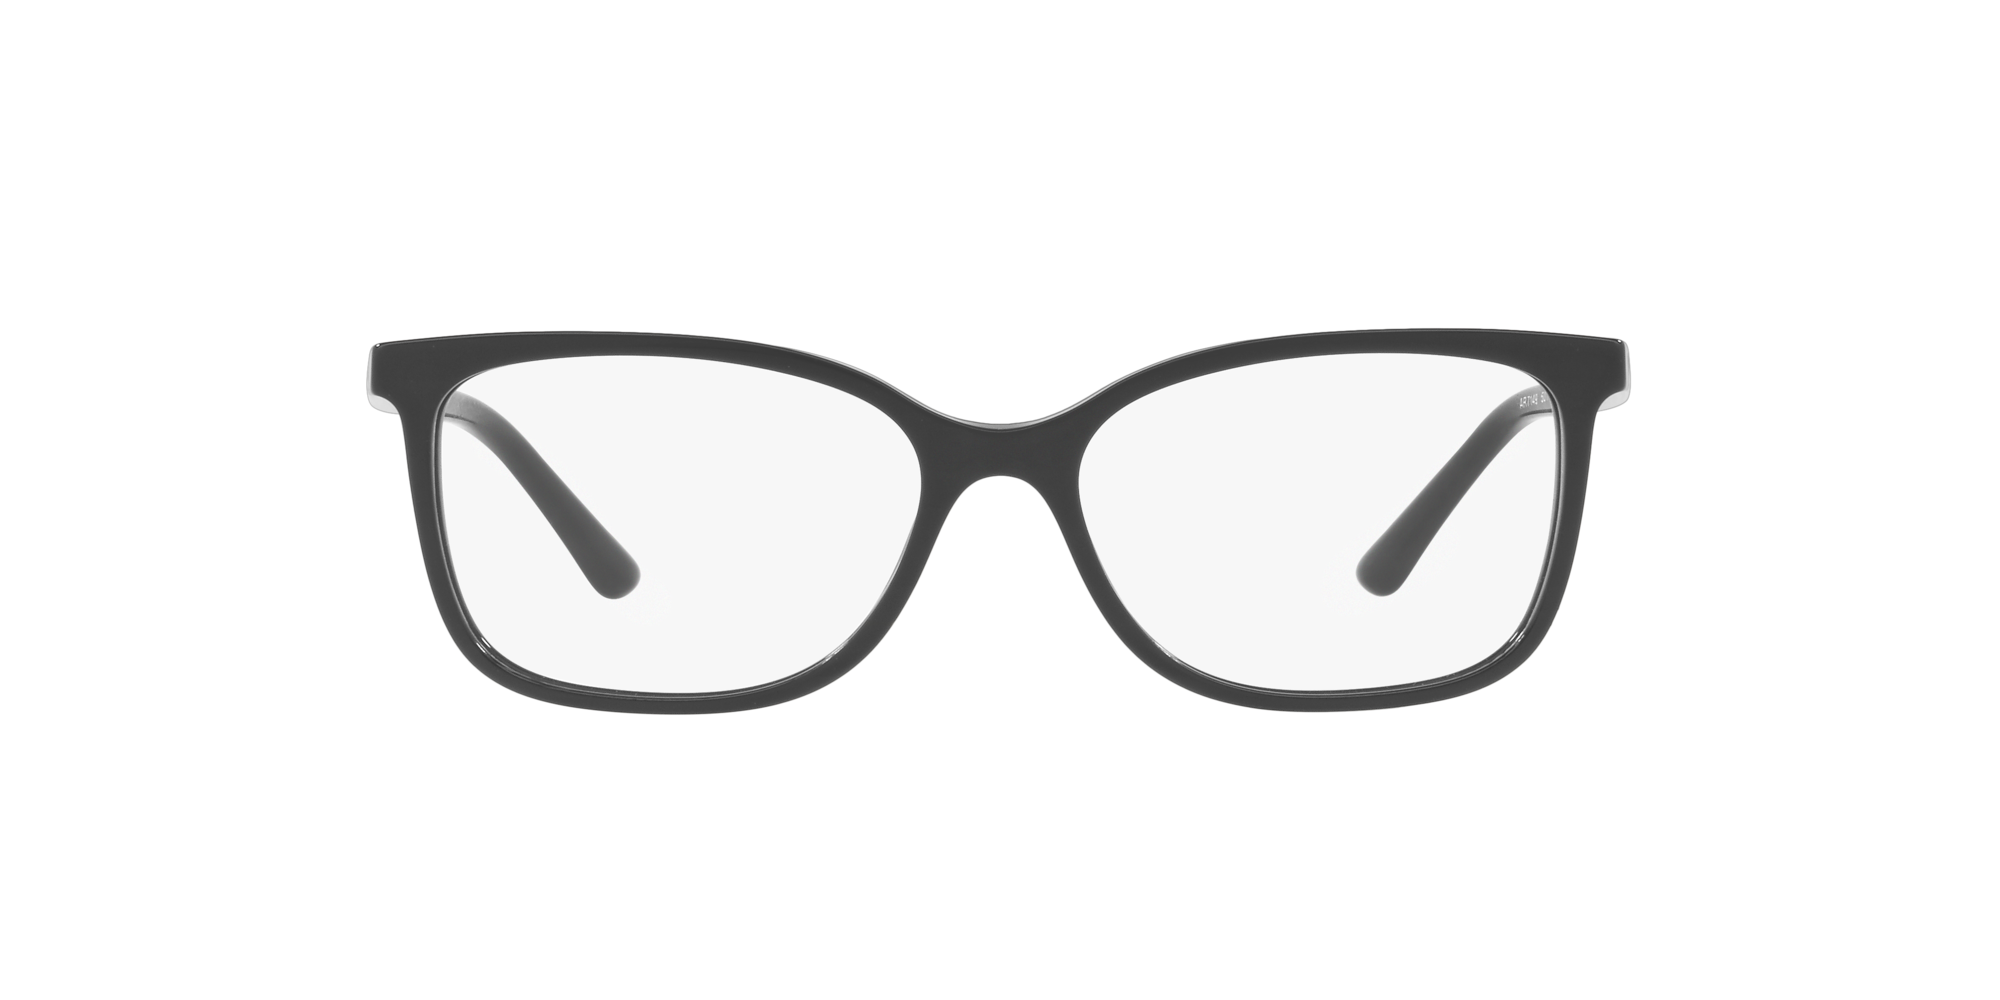 giorgio armani glasses lenscrafters